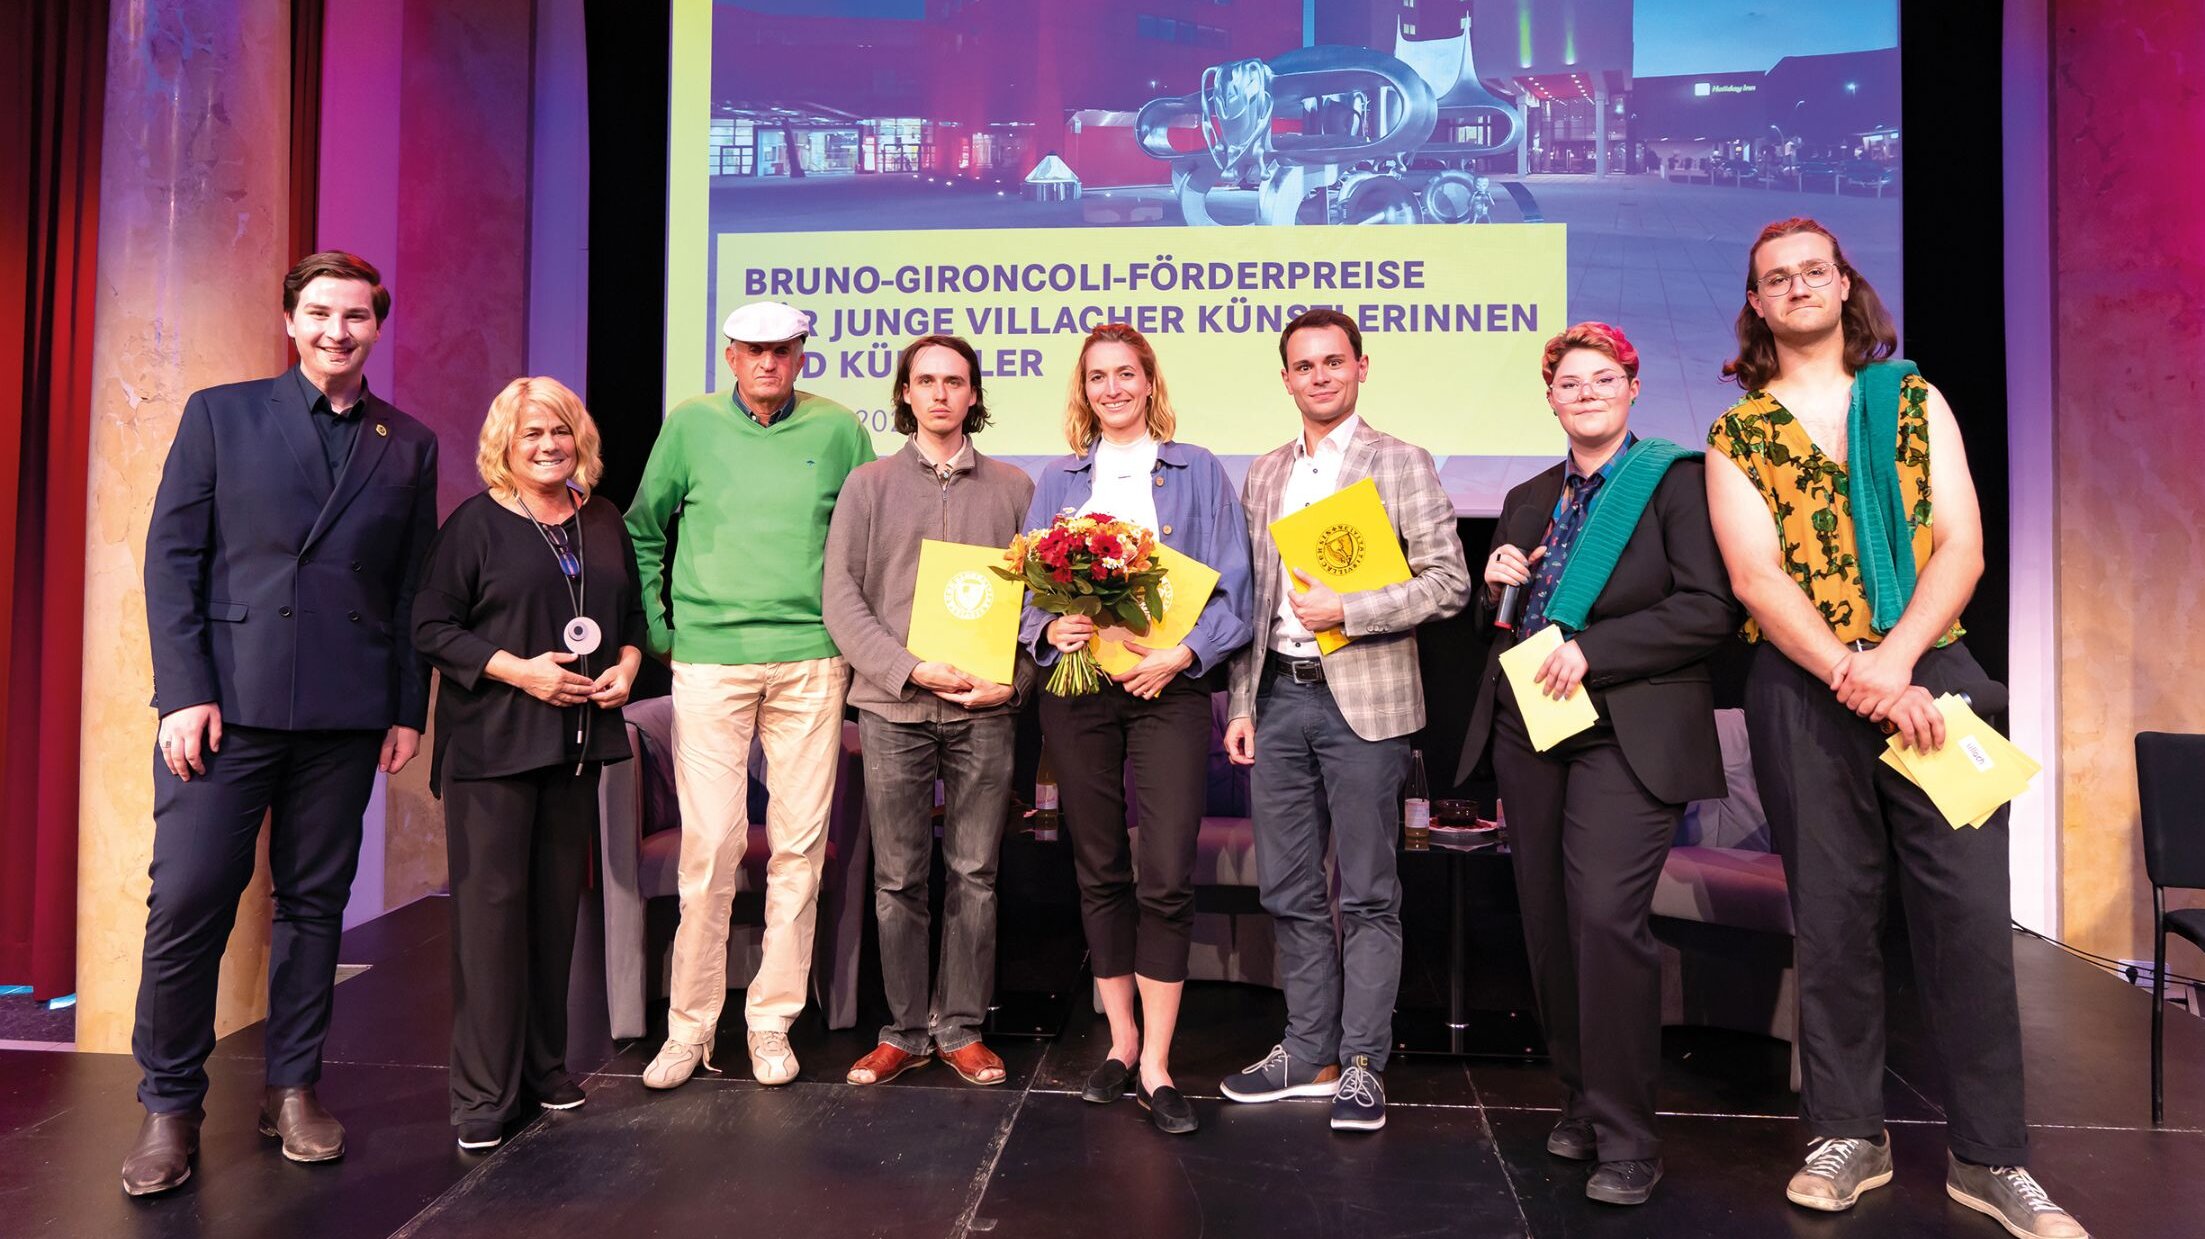 Teilnehmer:innen des Bruno Gironcoli Förderpreises auf der Bühne